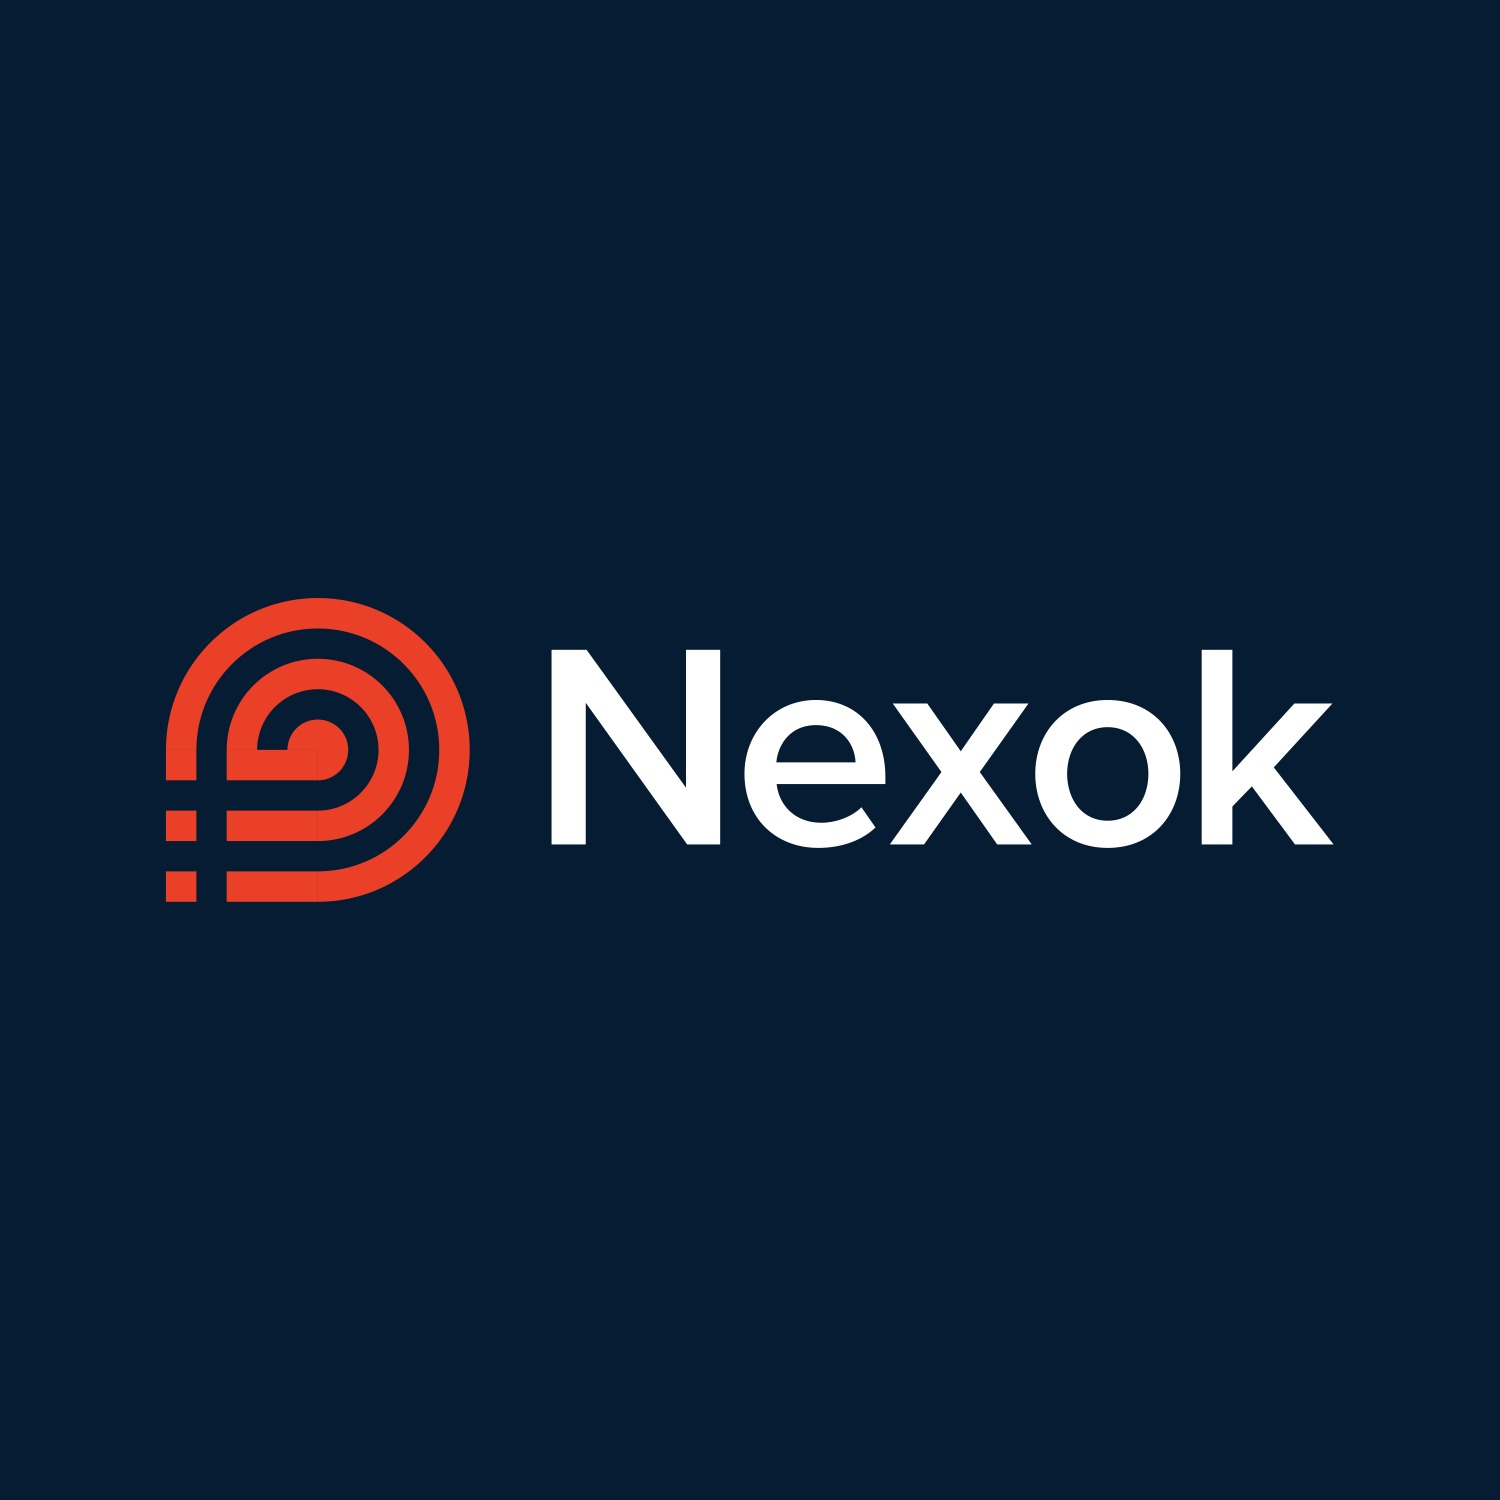 www.nexok.co.uk